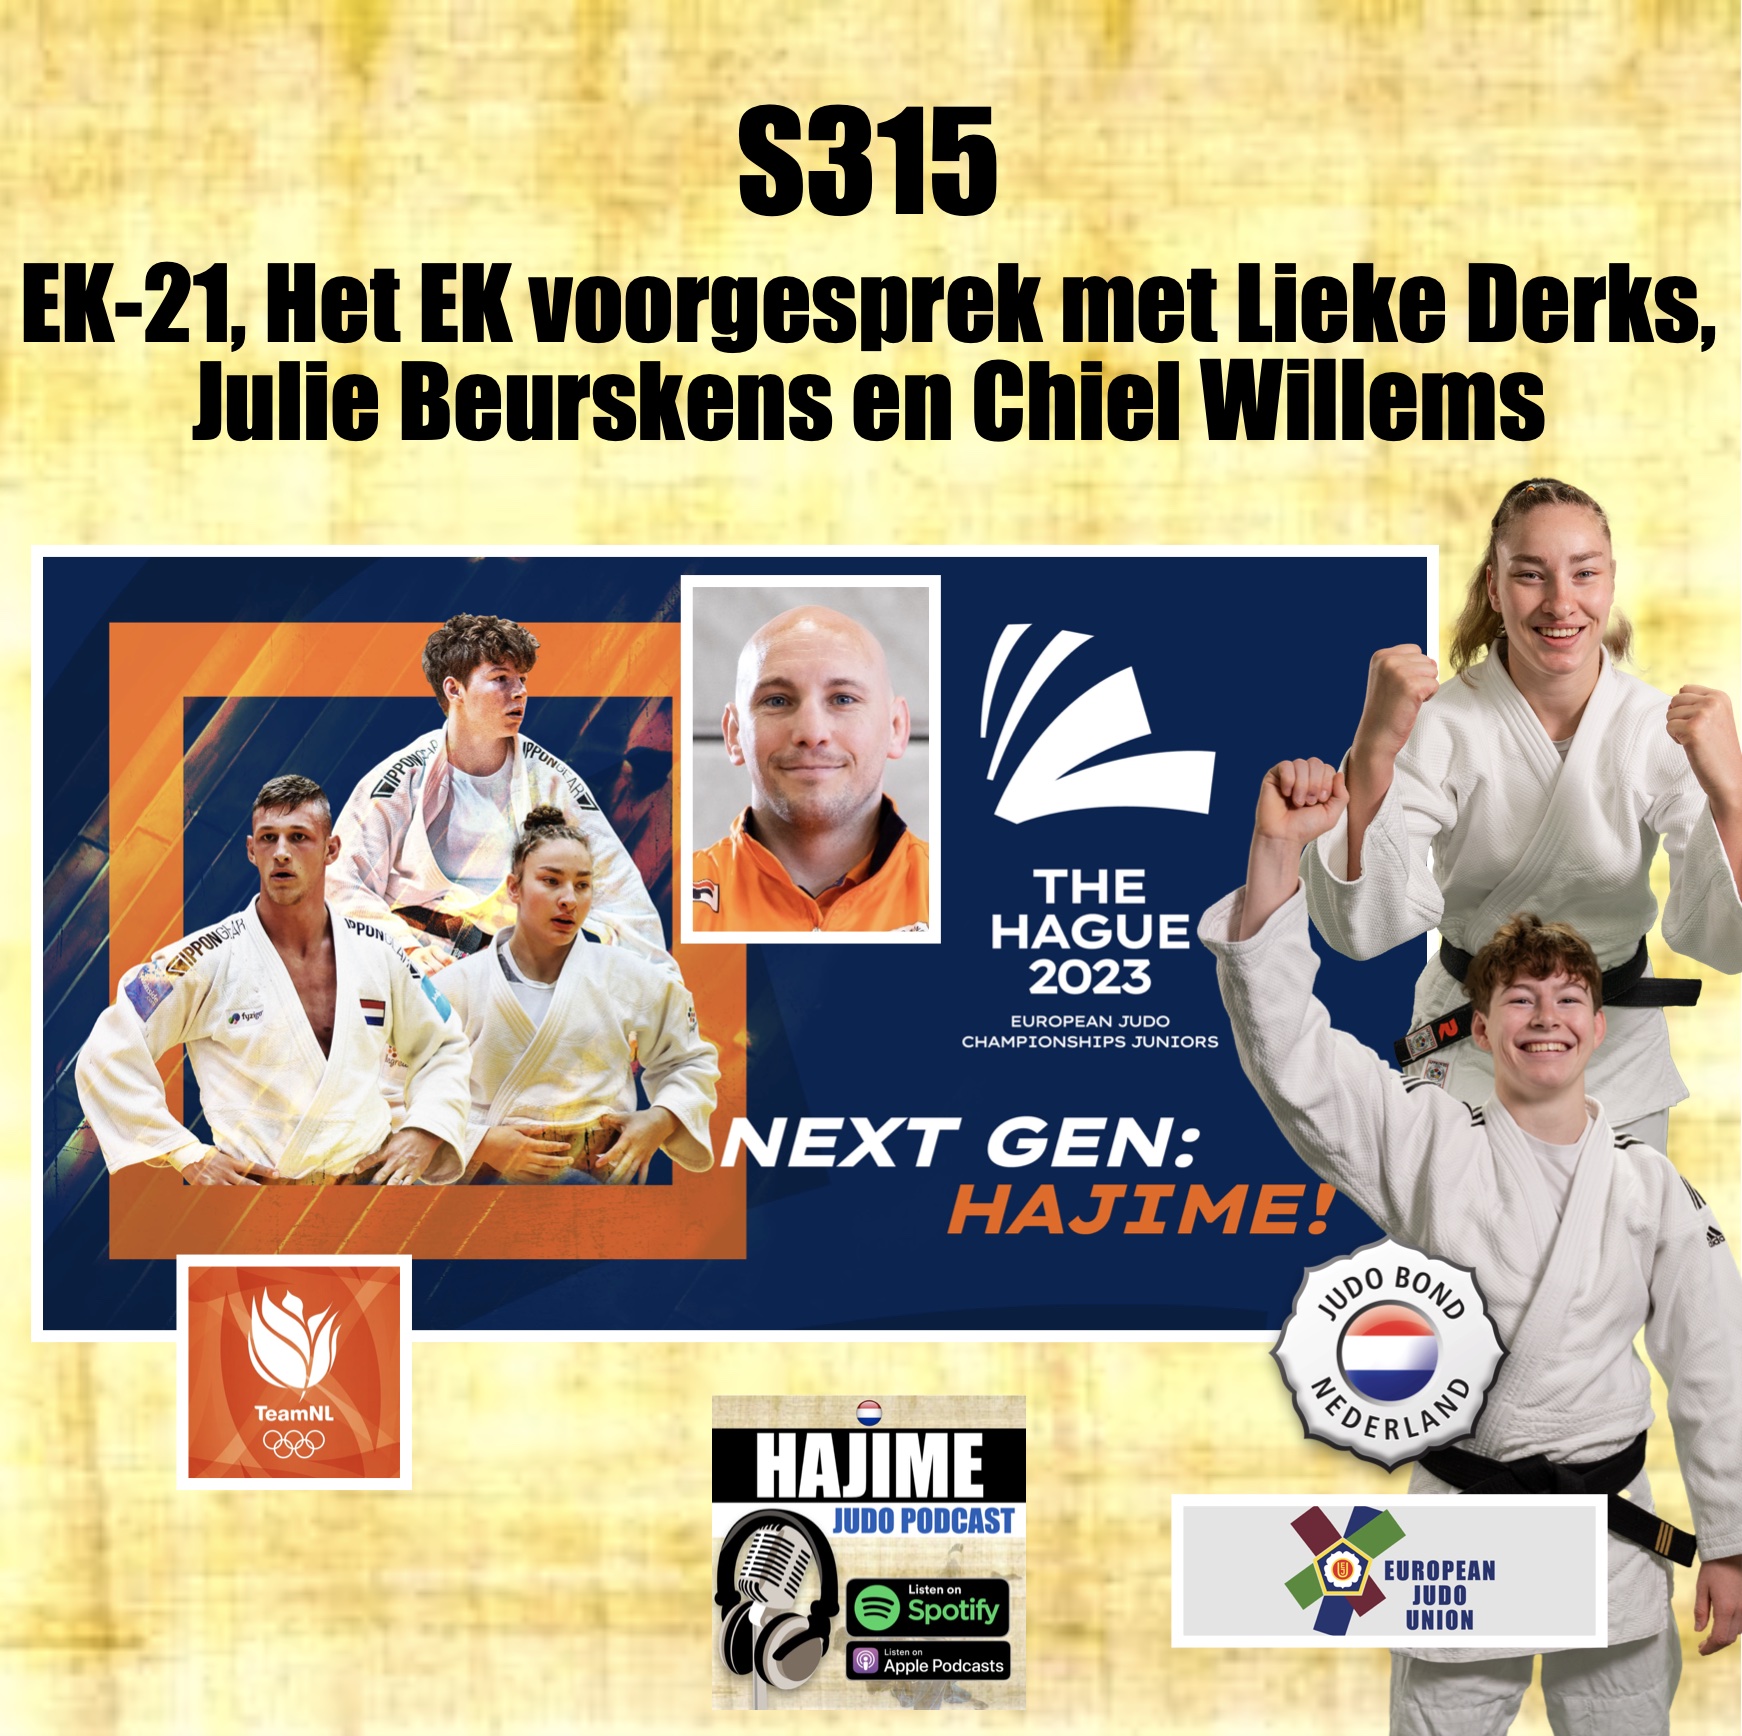 HJP S315 EK-21, Het EK voorgesprek met Lieke Derks, Julie Beurskens en Chiel Willems